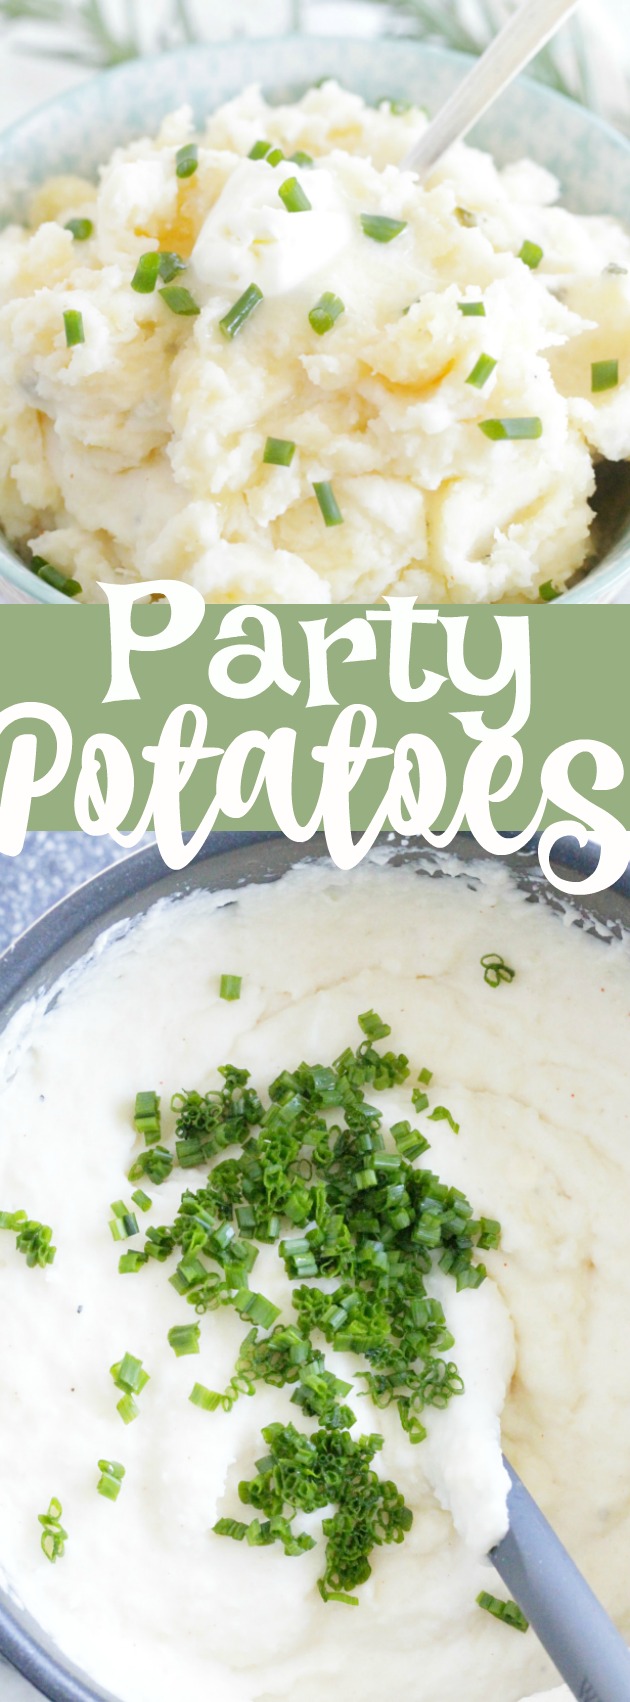 Party Potatoes | Foodtastic Mom #potatorecipes #mashedpotatoes #partypotatoes #makeaheadpotatoes via @foodtasticmom